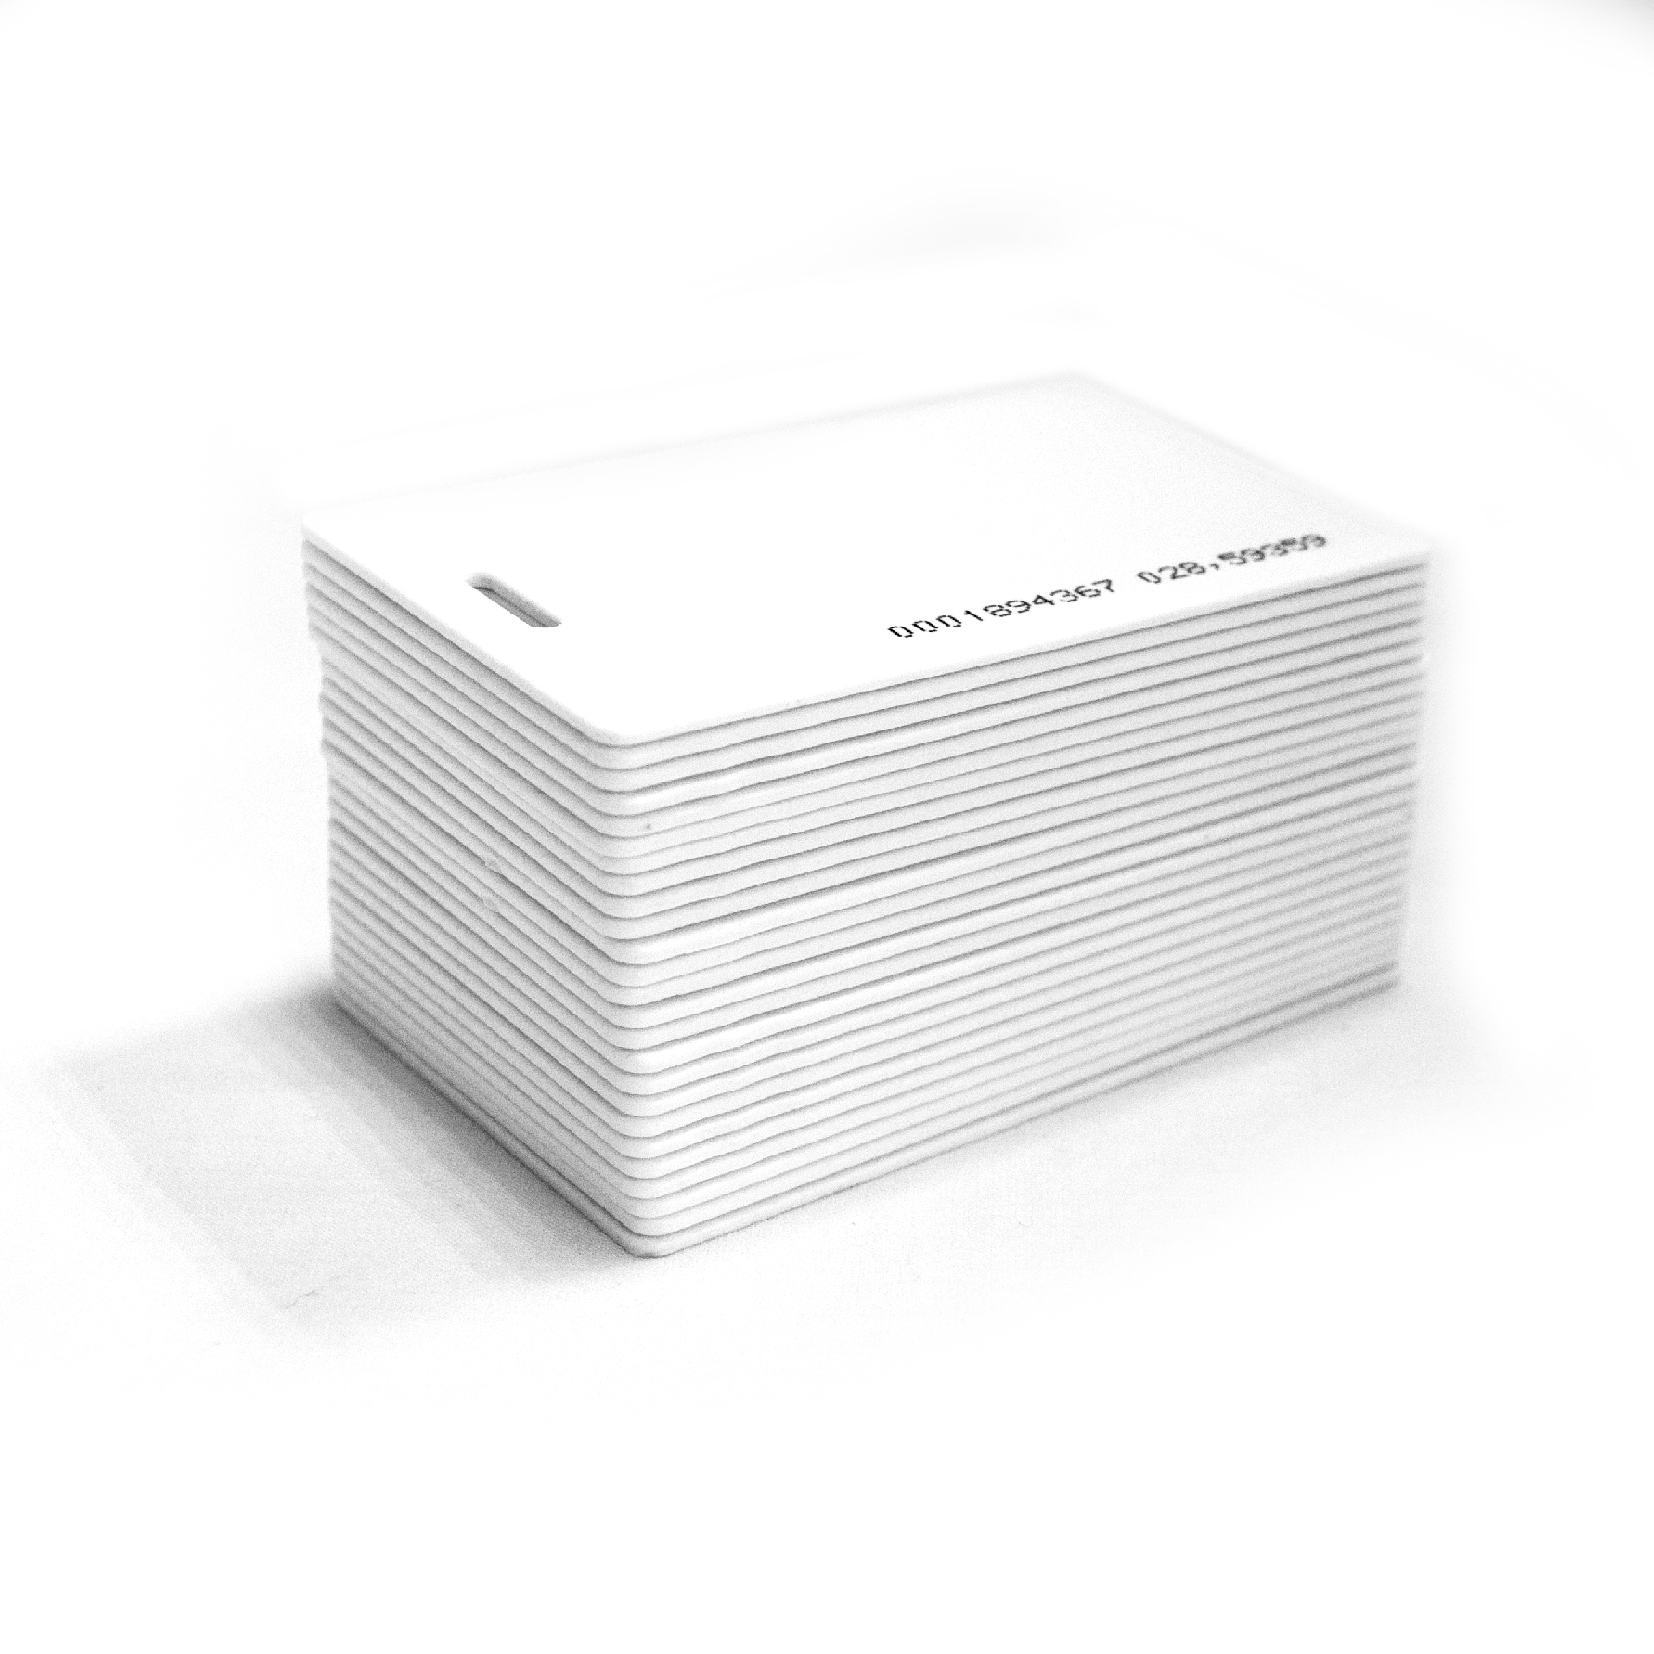 Набор пропускных карточек Slinex Proximity для считывателей с кодом Em-marine, 100 штук для бейджа и карточек